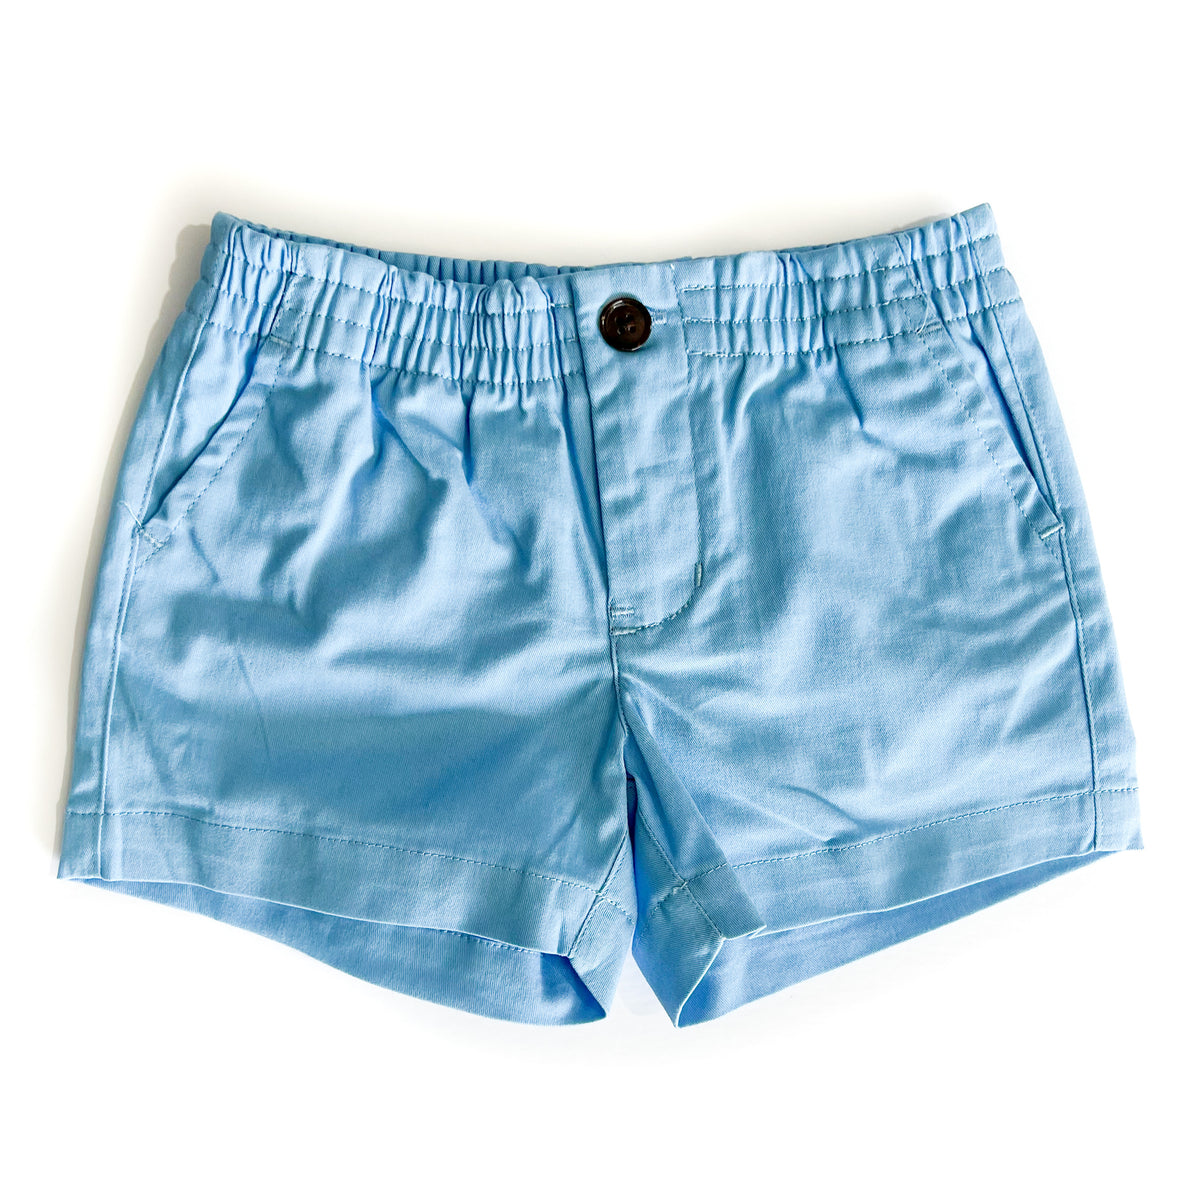 Cobalt Blue Boy Shorts